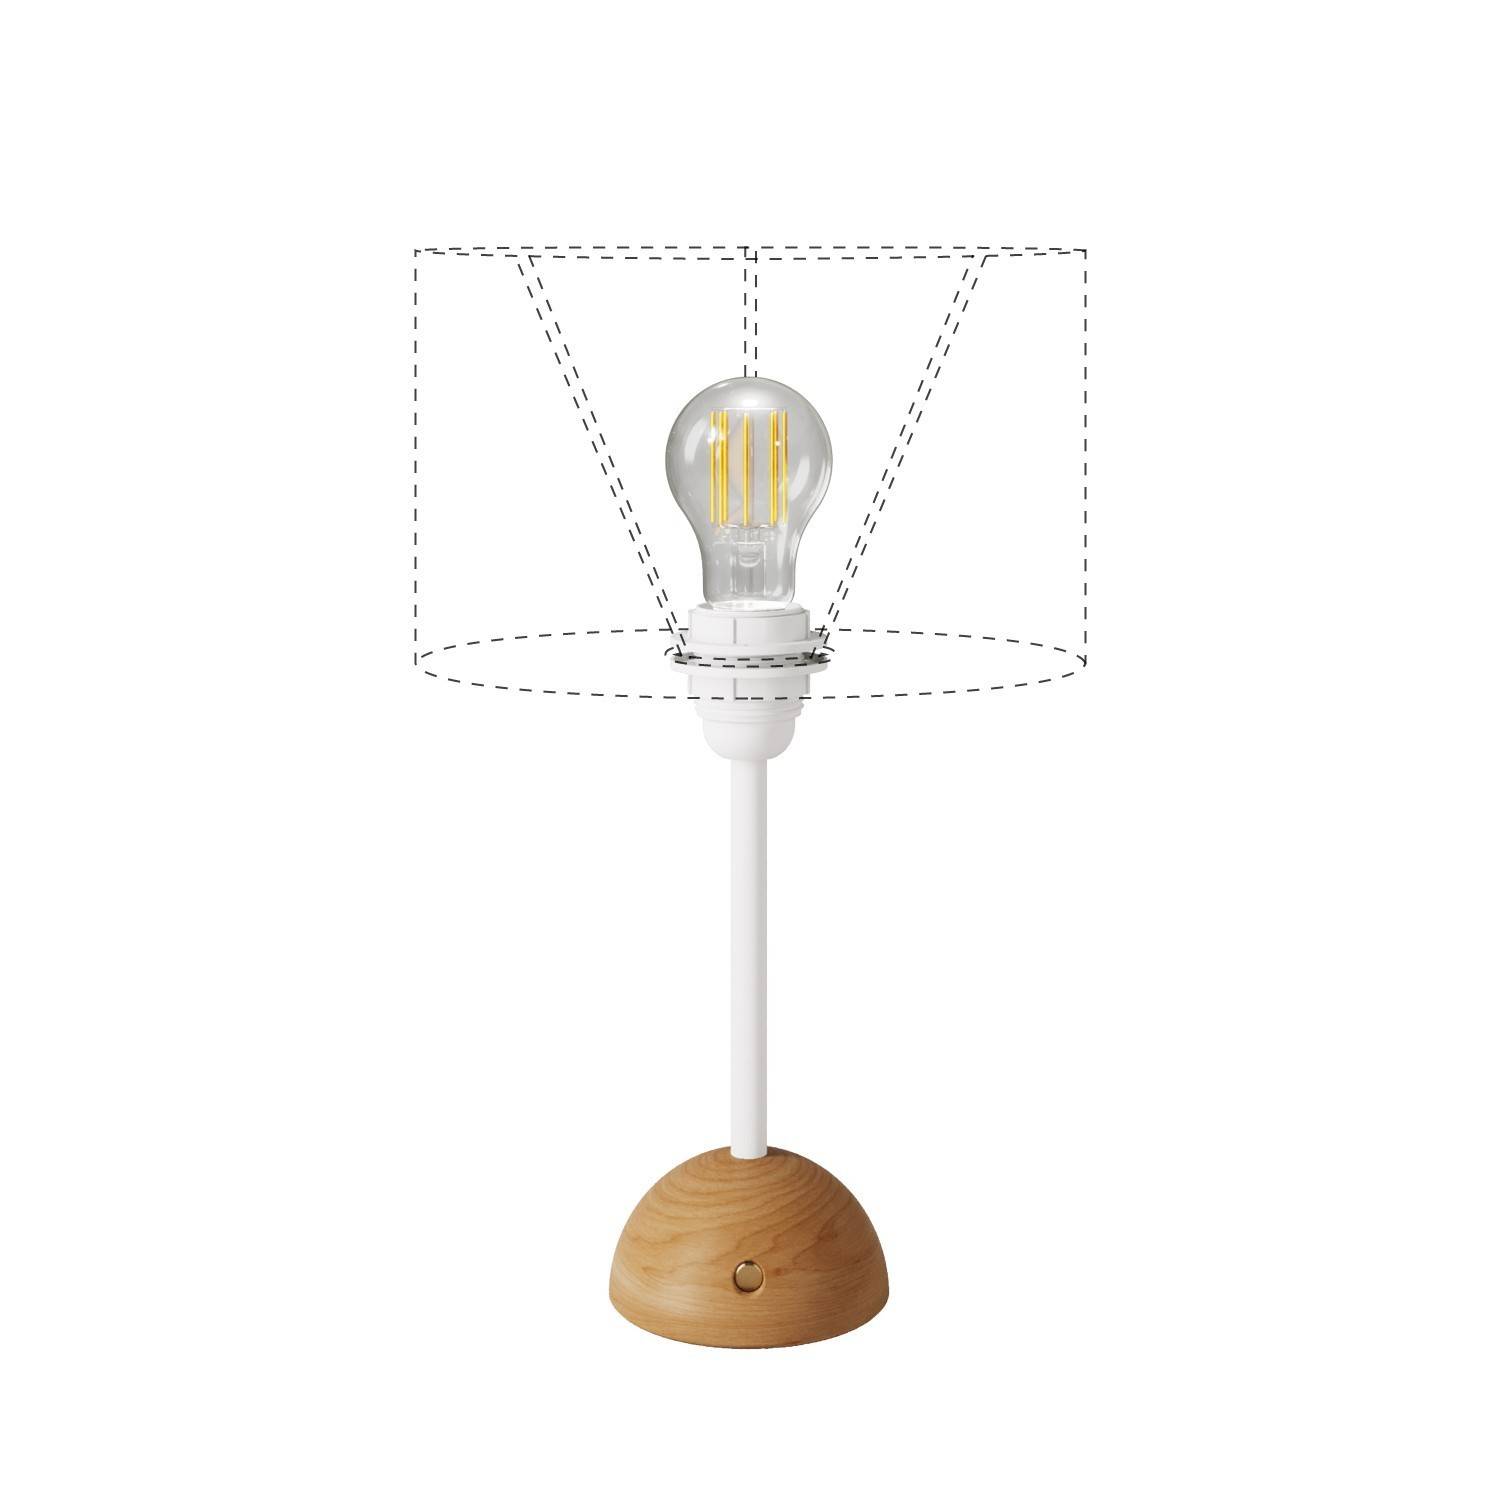 Přenosná a dobíjecí lampa Cabless12 s kapkovou žárovkou vhodná pro stínítko